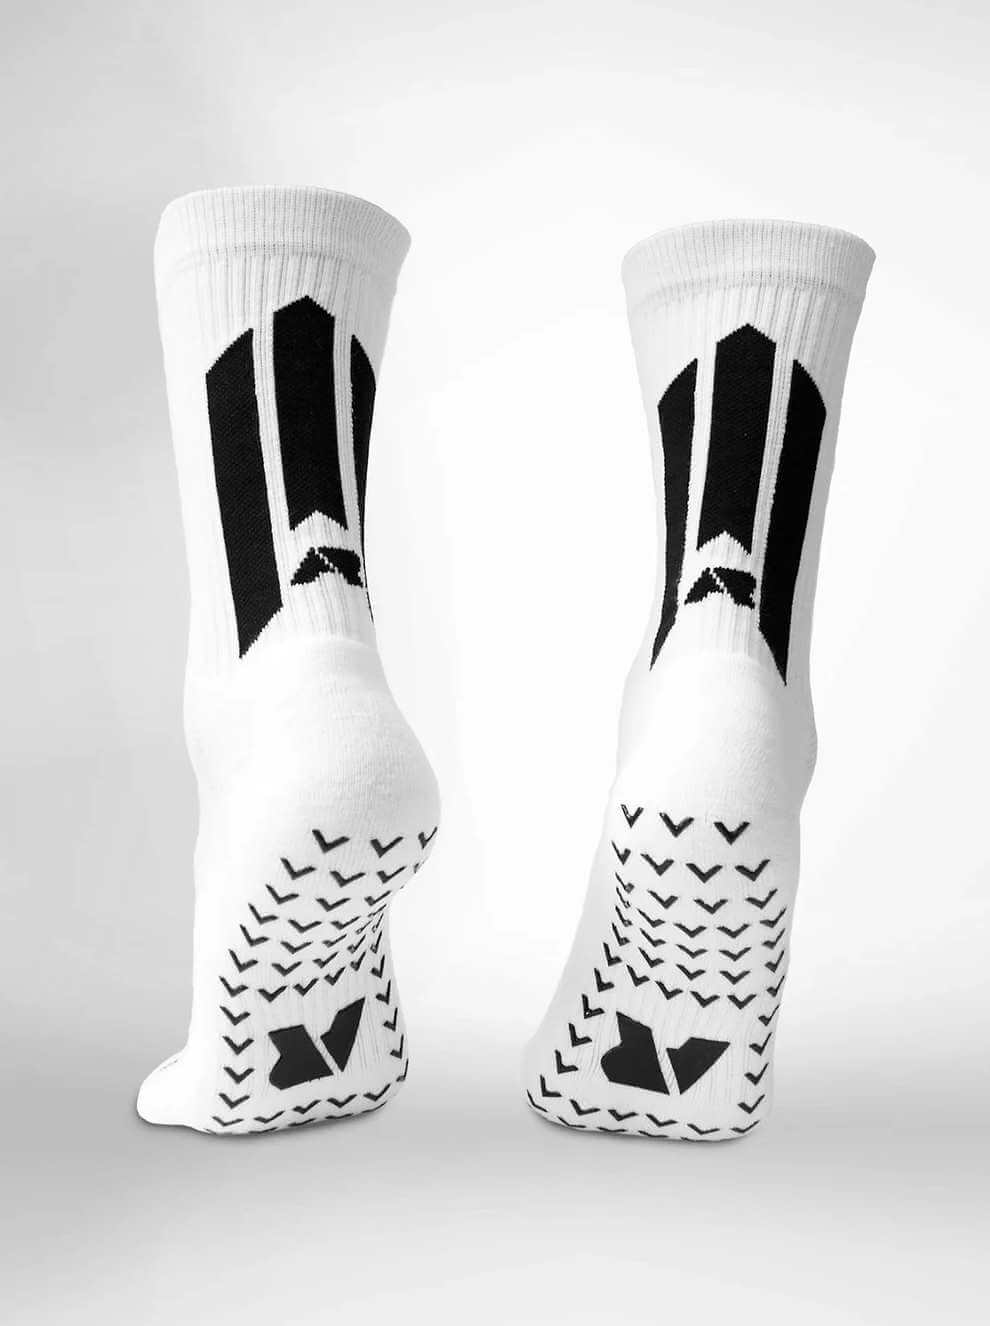 Grip Socks, Grip Socks Football, Grip Socks Soccer